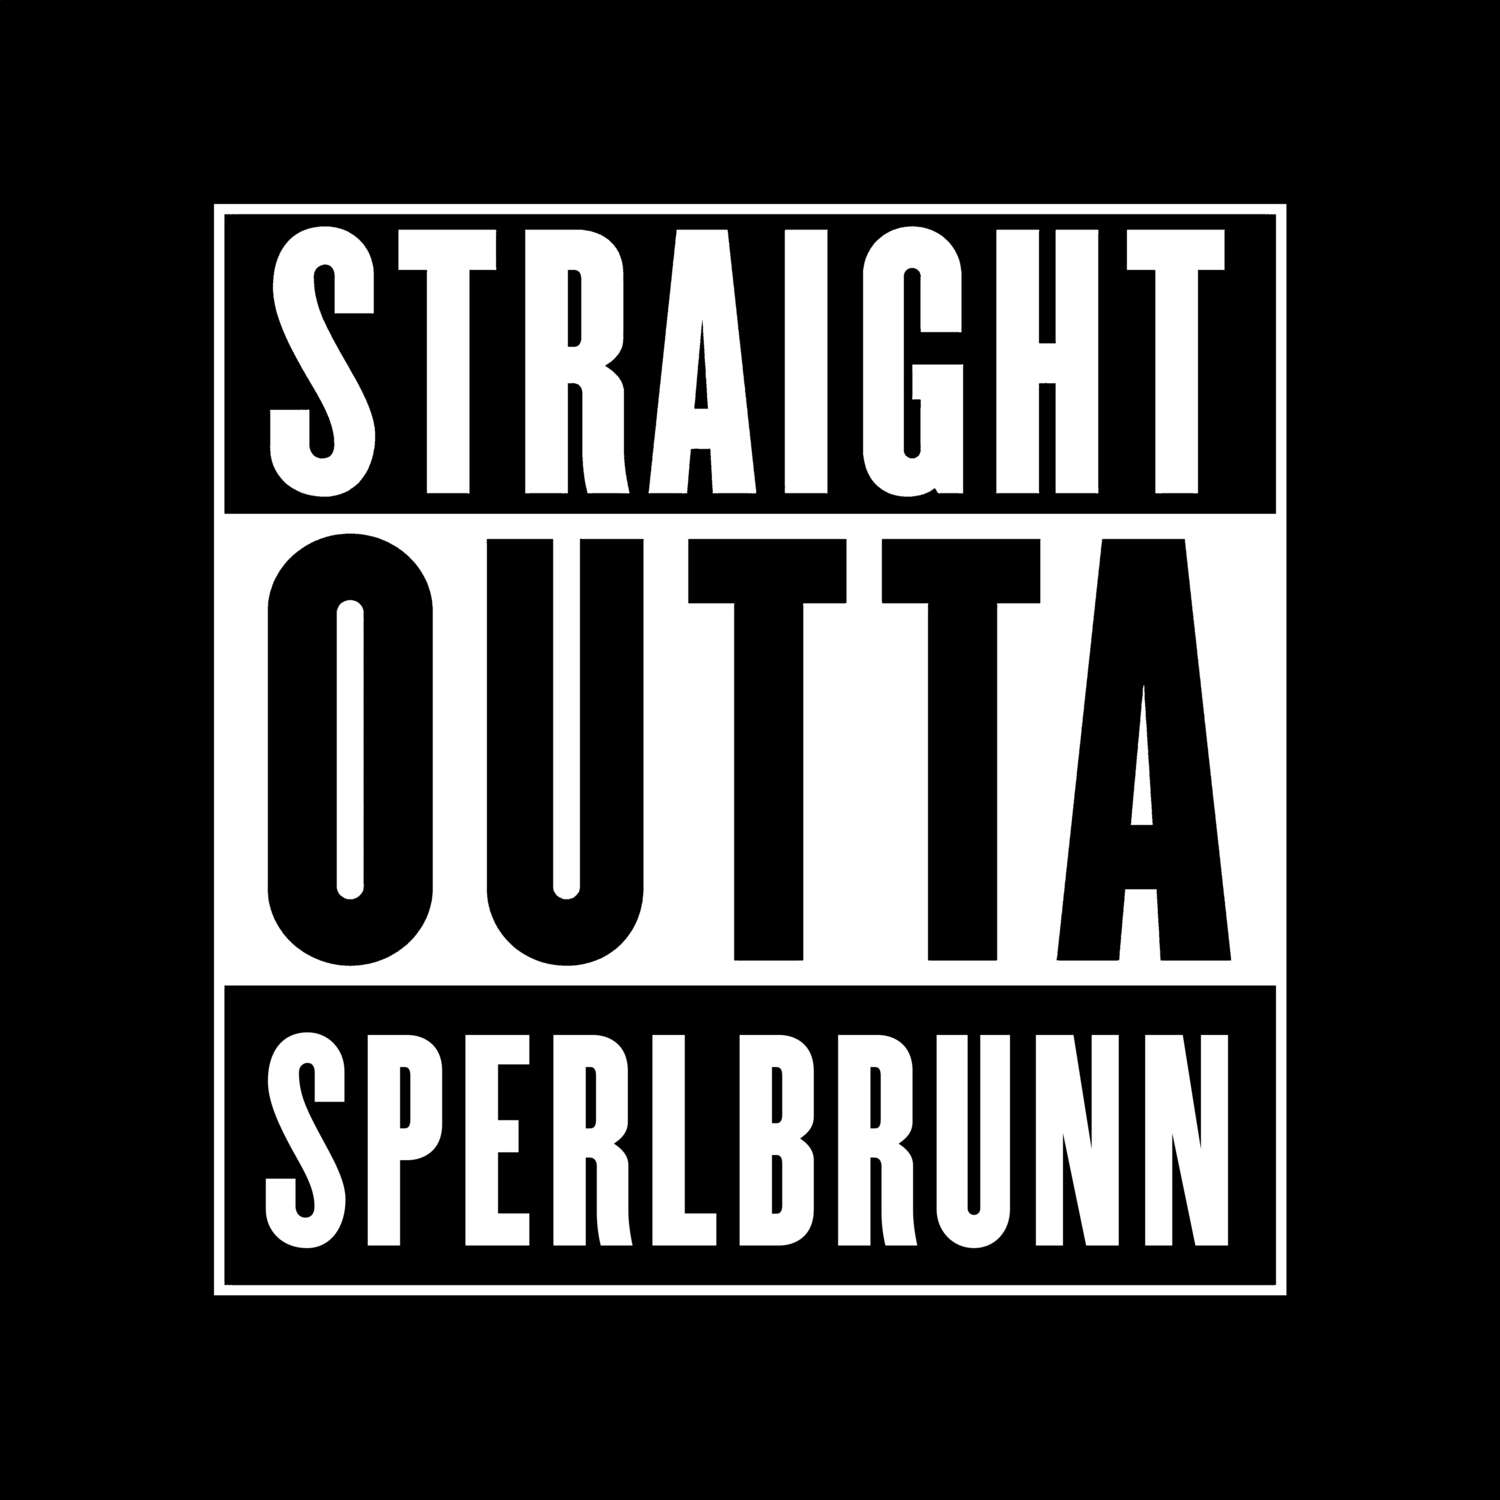 Sperlbrunn T-Shirt »Straight Outta«